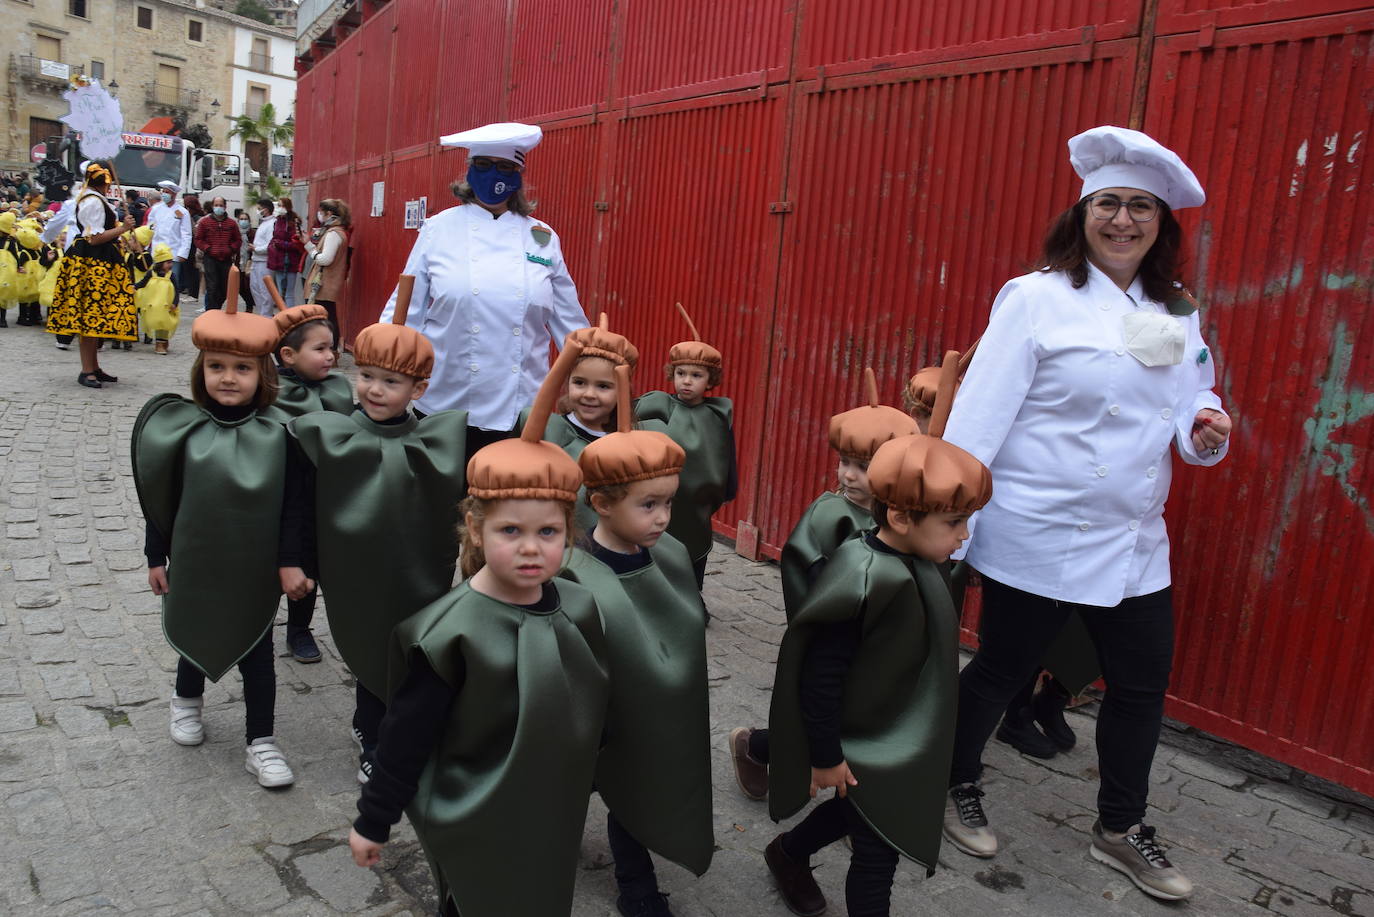 Fotos: El carnaval en los colegios